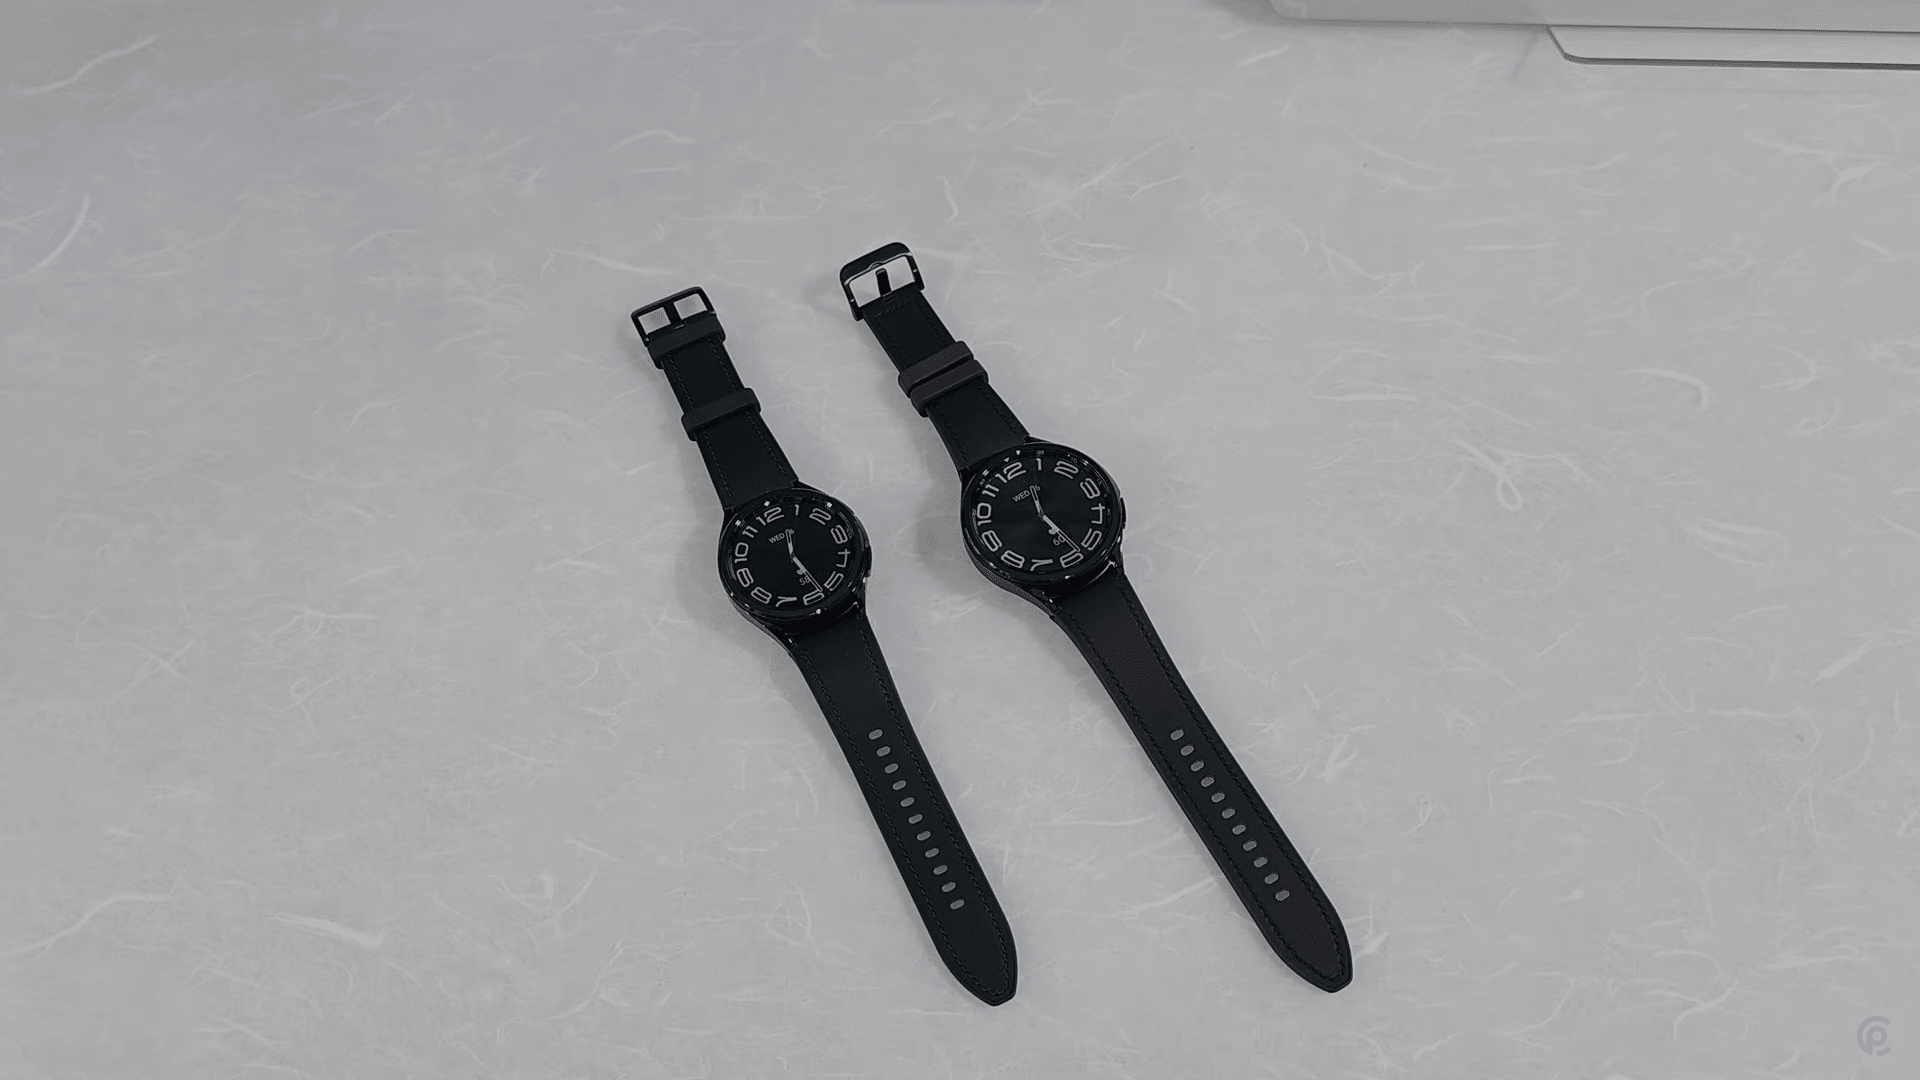 LO NUEVO de los Galaxy Watch 6 y Galaxy Watch 6 Classic primeras  impresiones 